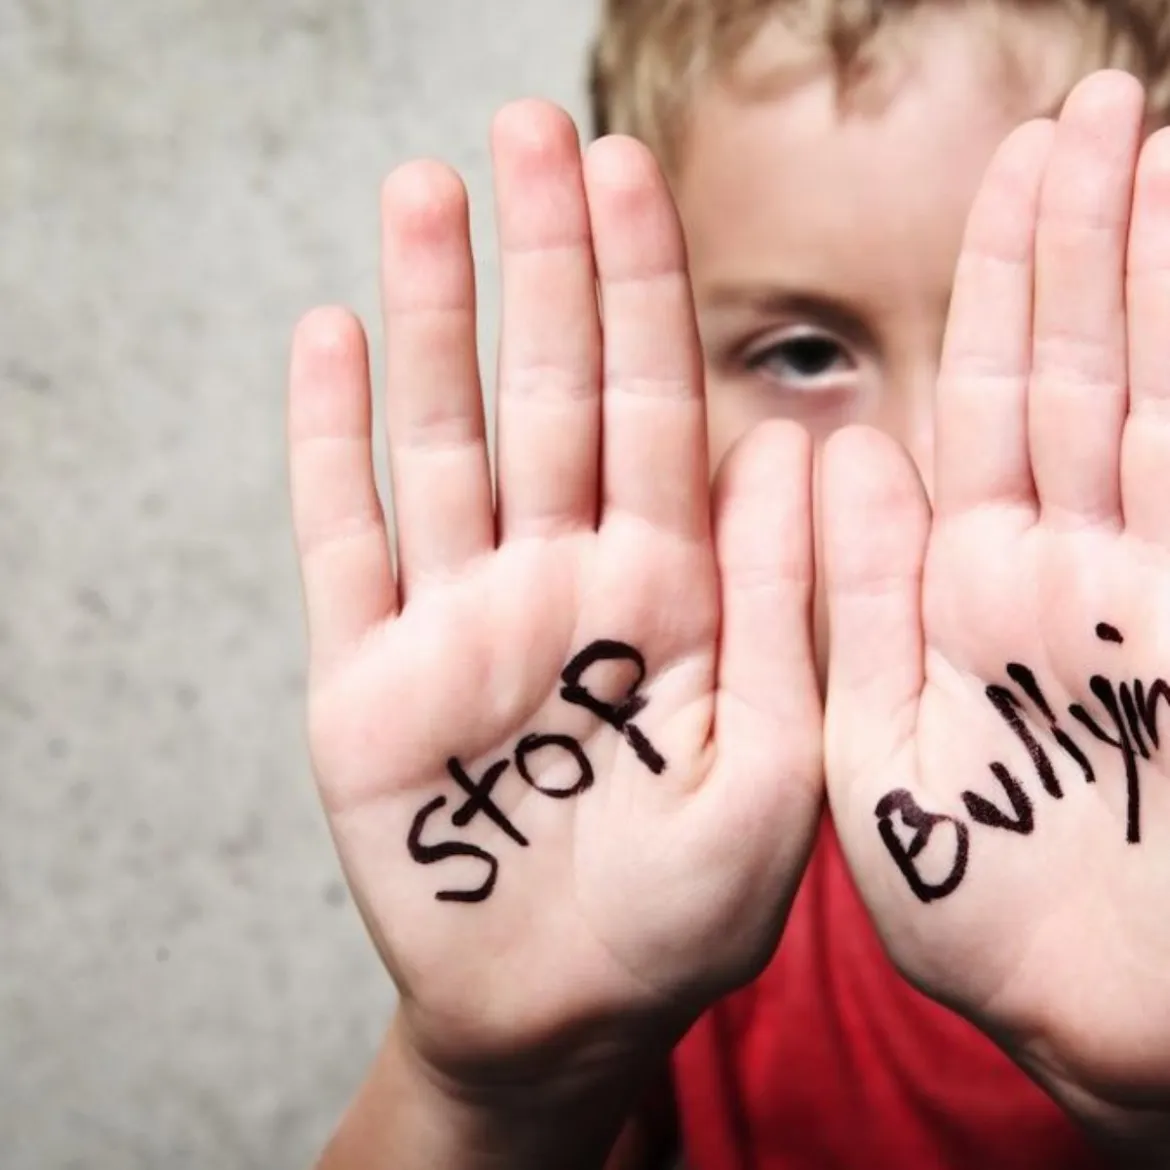  A Importância do Dia Mundial do Bullying, a Lei 13.185/15 e a responsabilidade das escolas